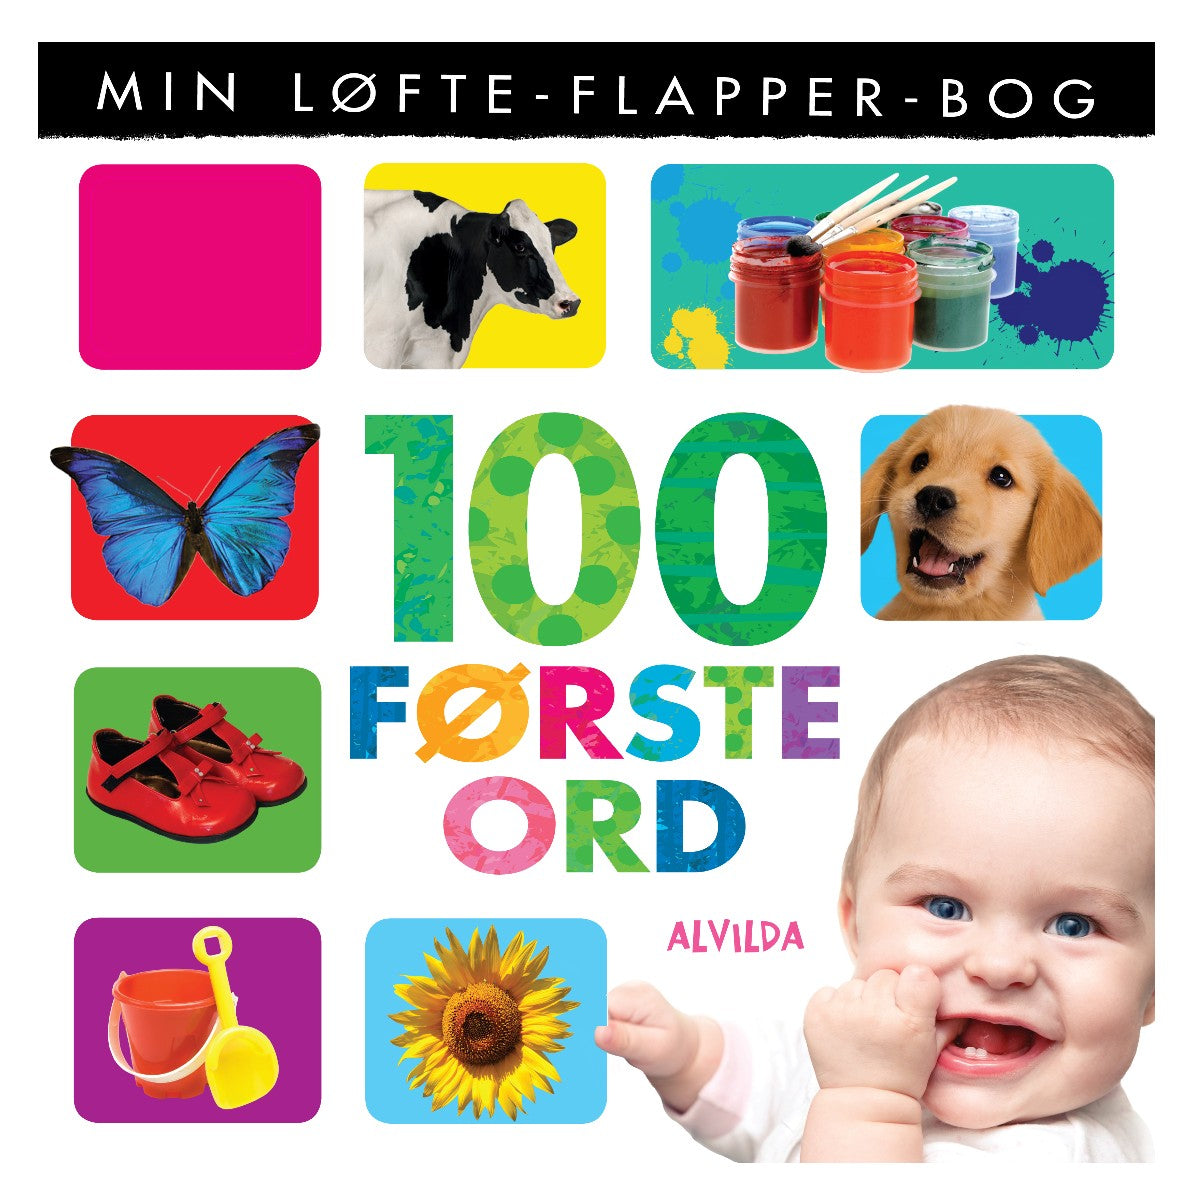 100 Første Ord, Min Løfte-flapper-bog fra Forlaget Alvilda